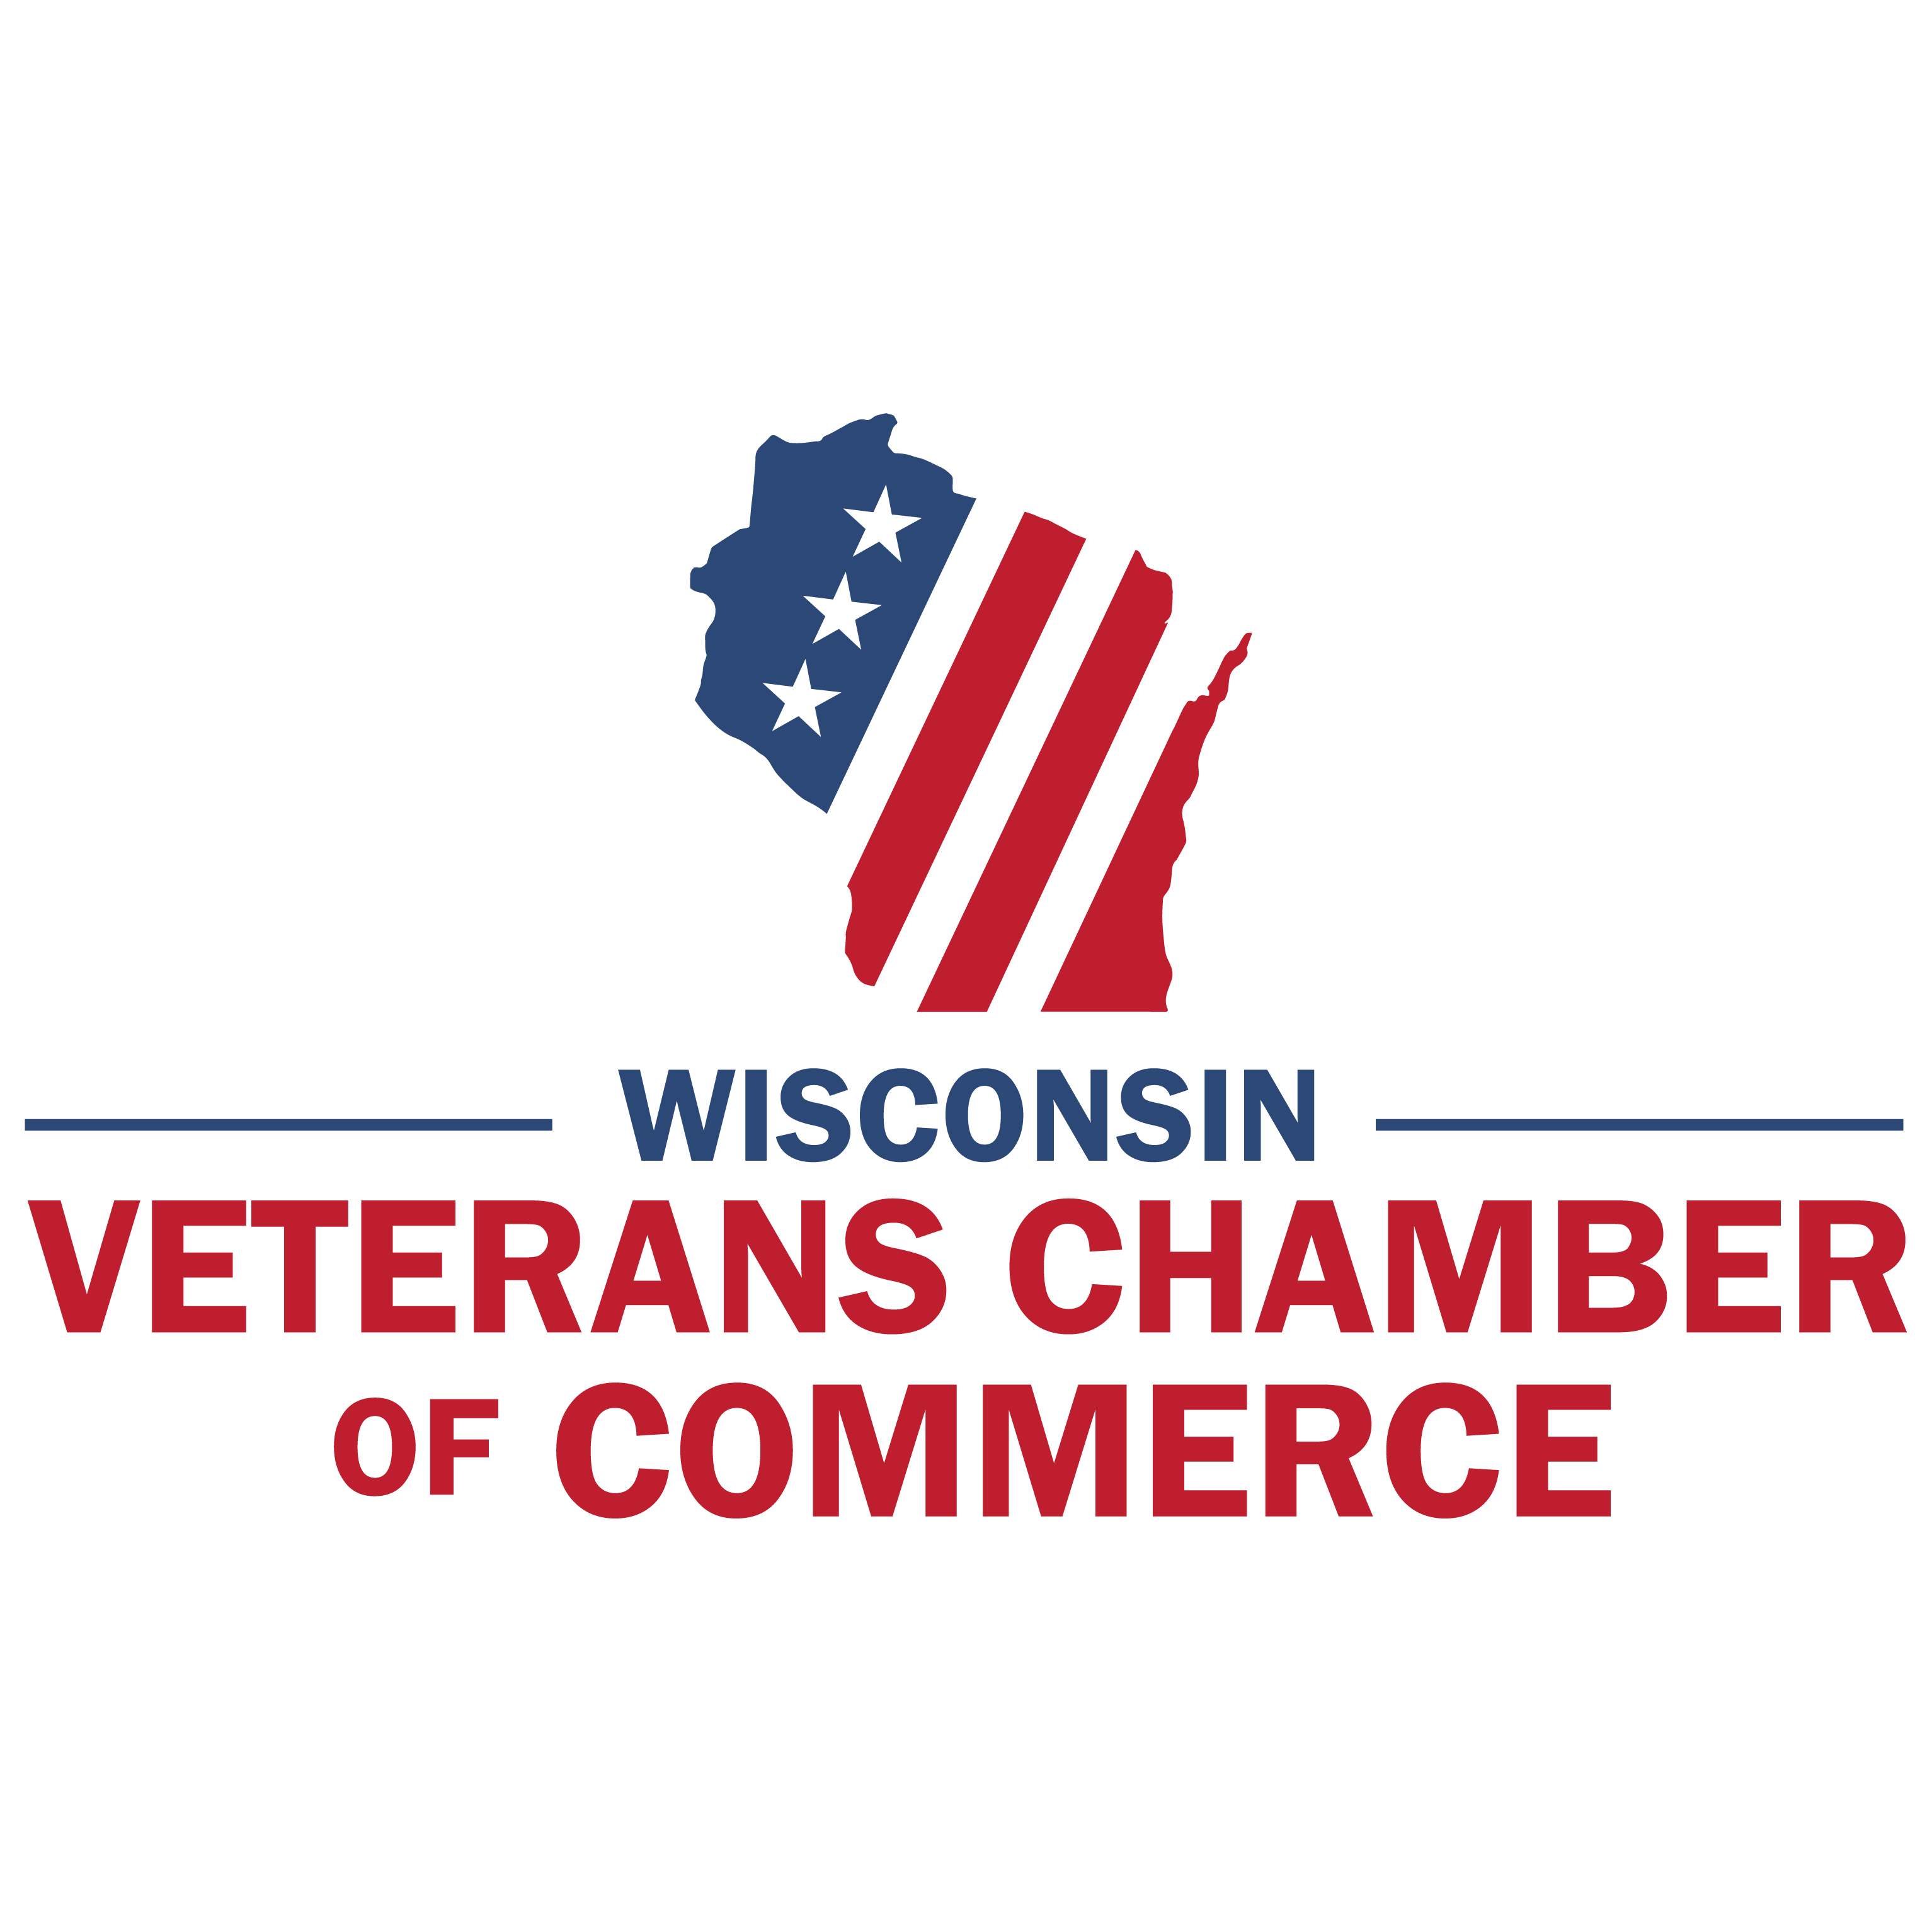 Wisconsin Veterans Chamber of Commerce job - Milwaukee, WI